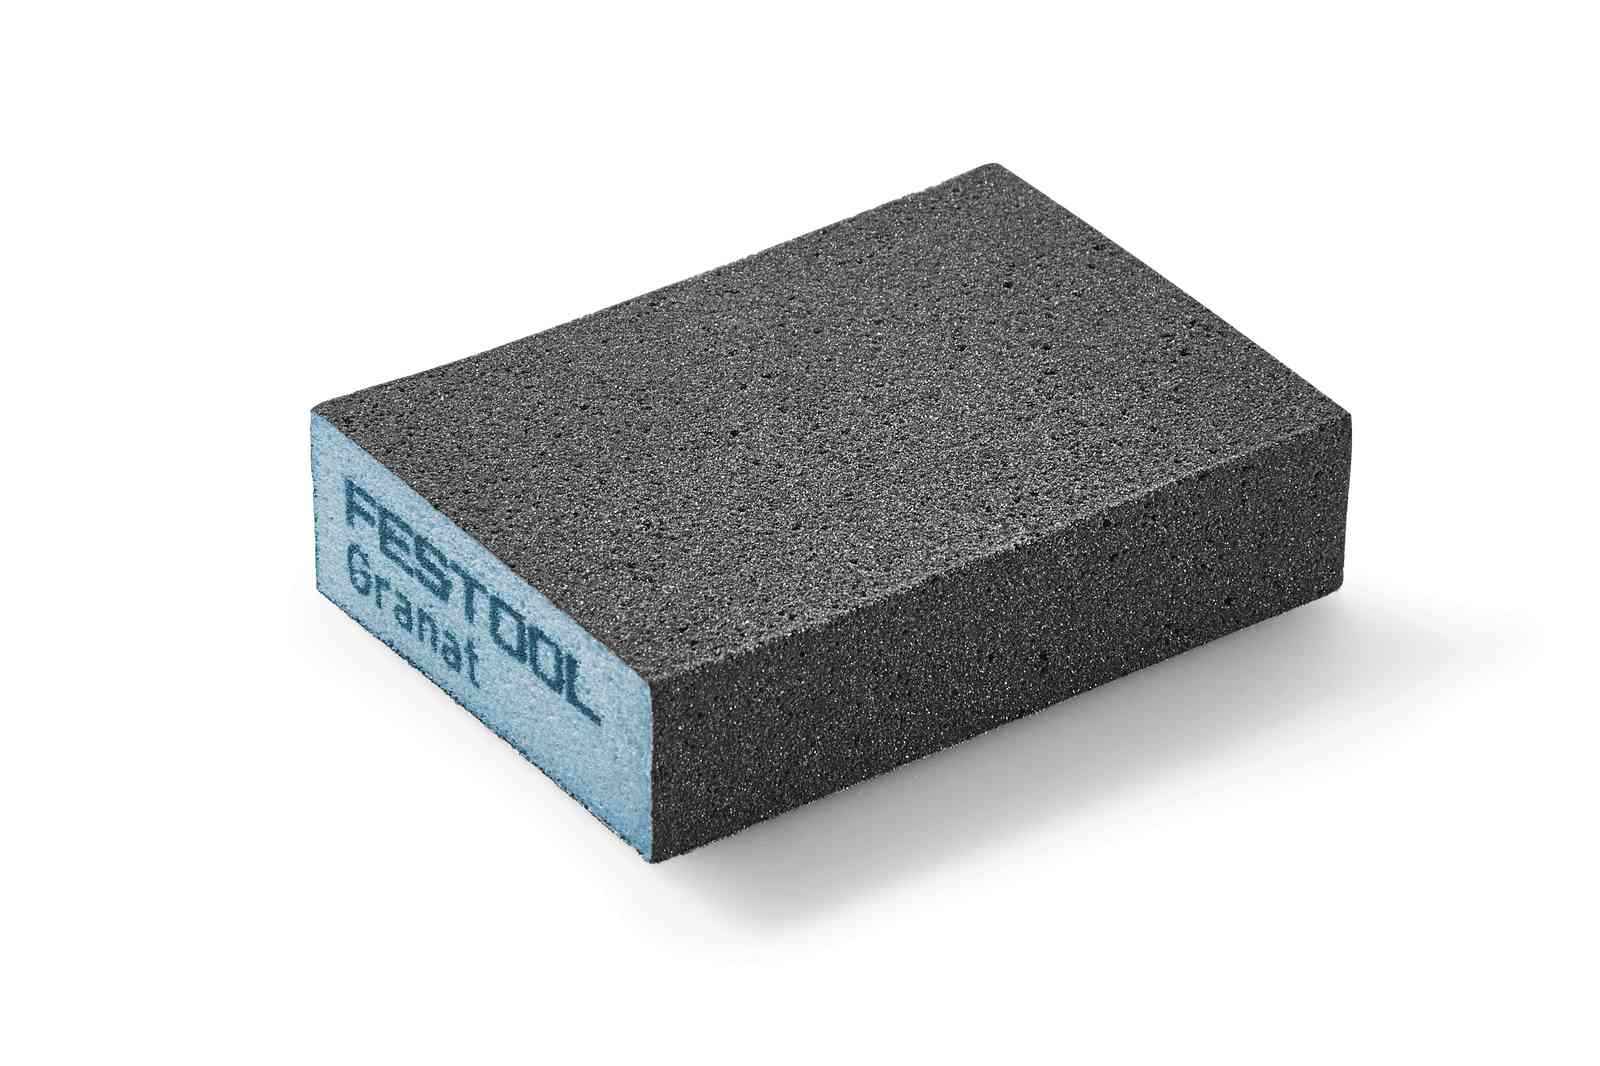 Schleifblock 69x98x26 Körnung 120  (6 Stück) Granat universell für Lacke, Farben, Füller, Holz, Metalle